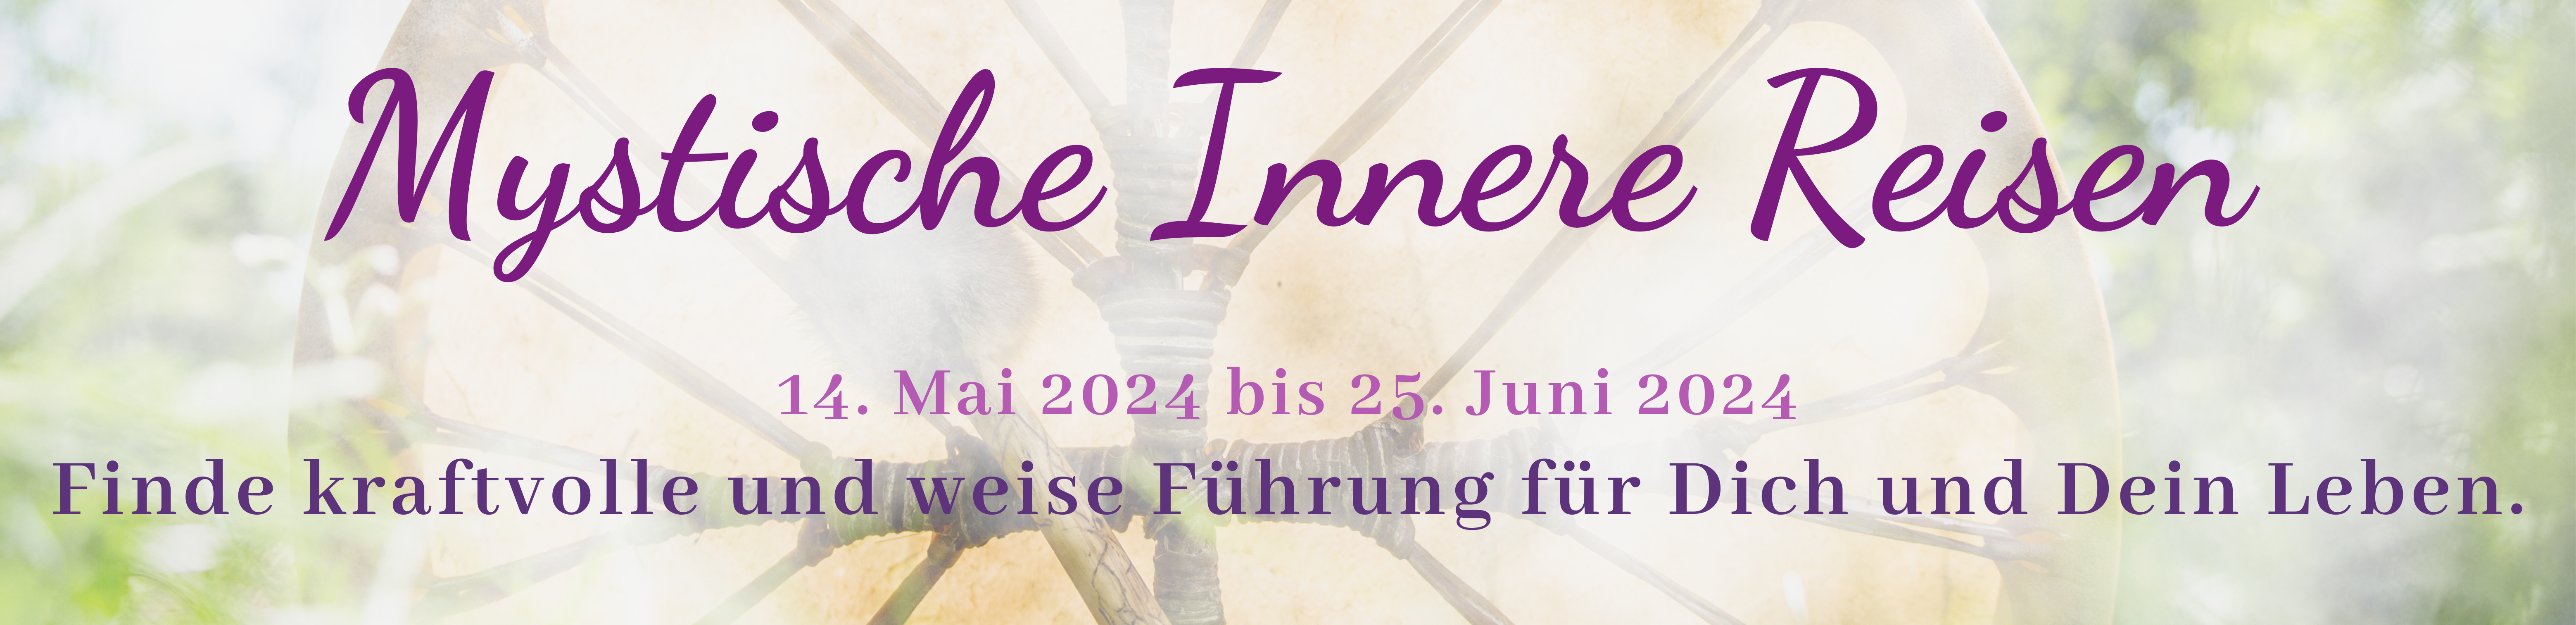 Mystische Innere Reisen 14.05. bis 25.06. 2024 Homepage Banner violett CANVA